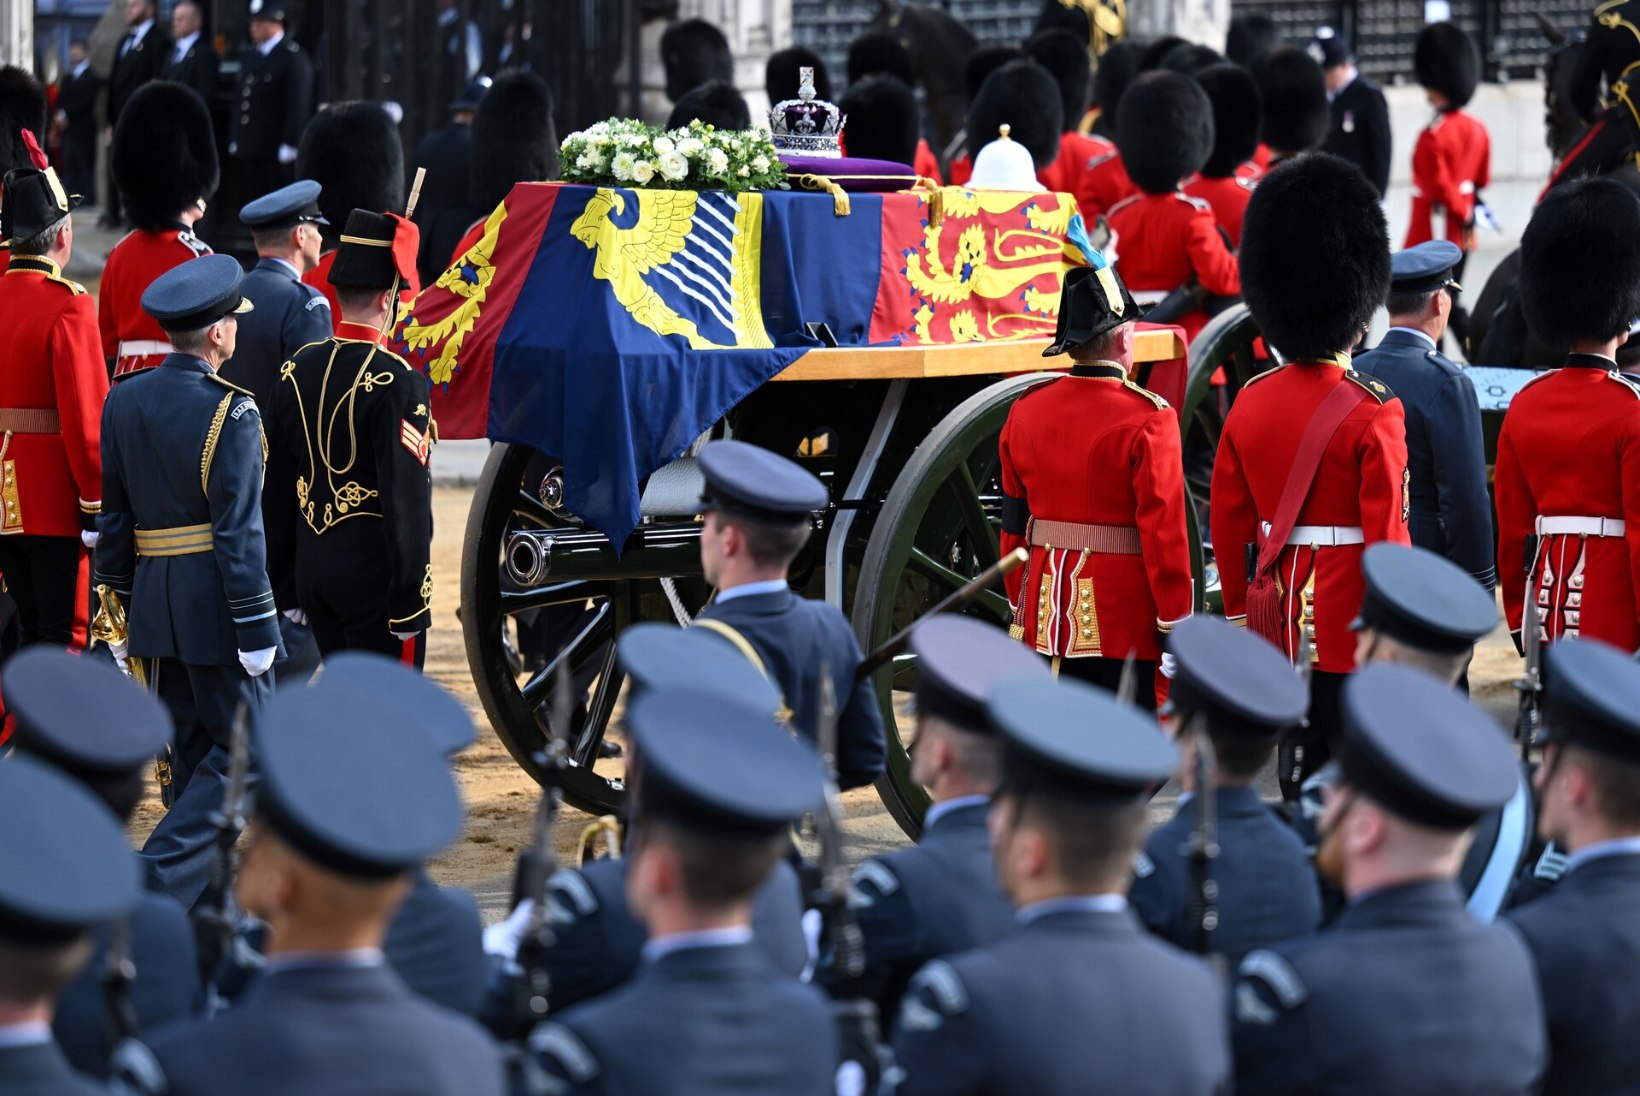 Kuninganna eriline kirst on matuseid oodanud üle 30 aasta